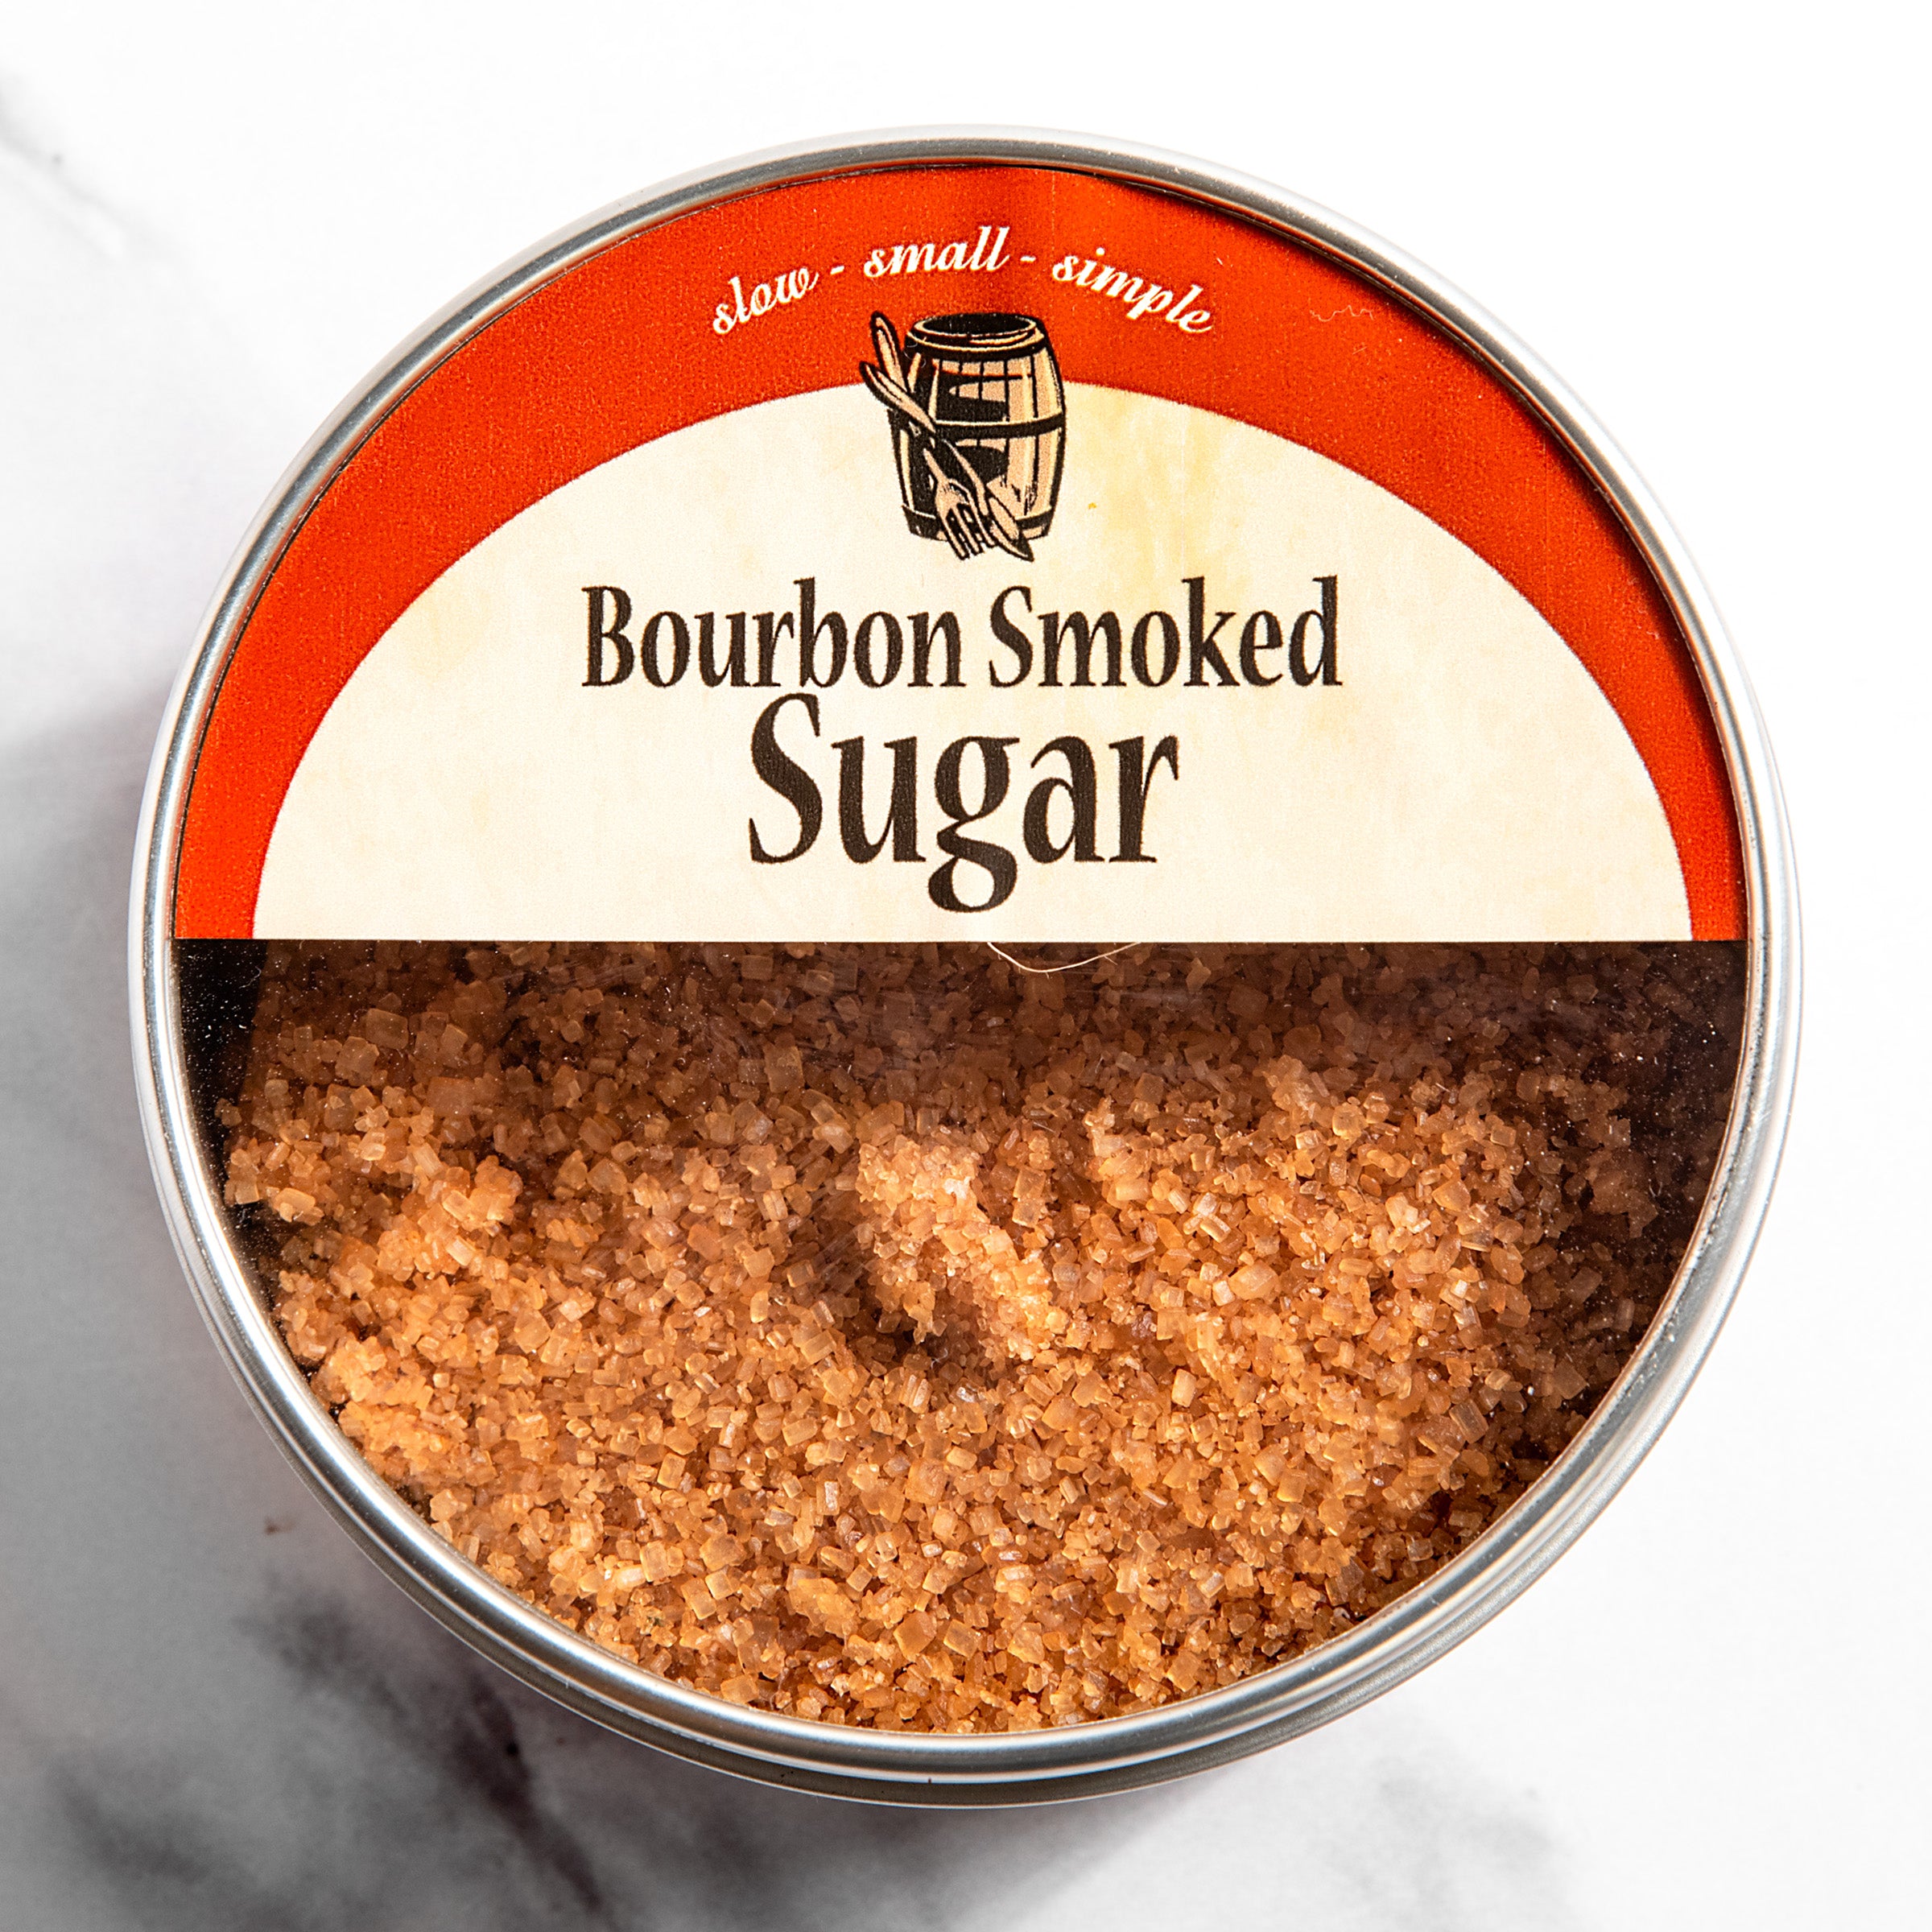 https://igourmet.com/cdn/shop/files/7499_Bourbon_Barrel_Foods_Bourbon_Smoked_Sugar-1.jpg?v=1690469622